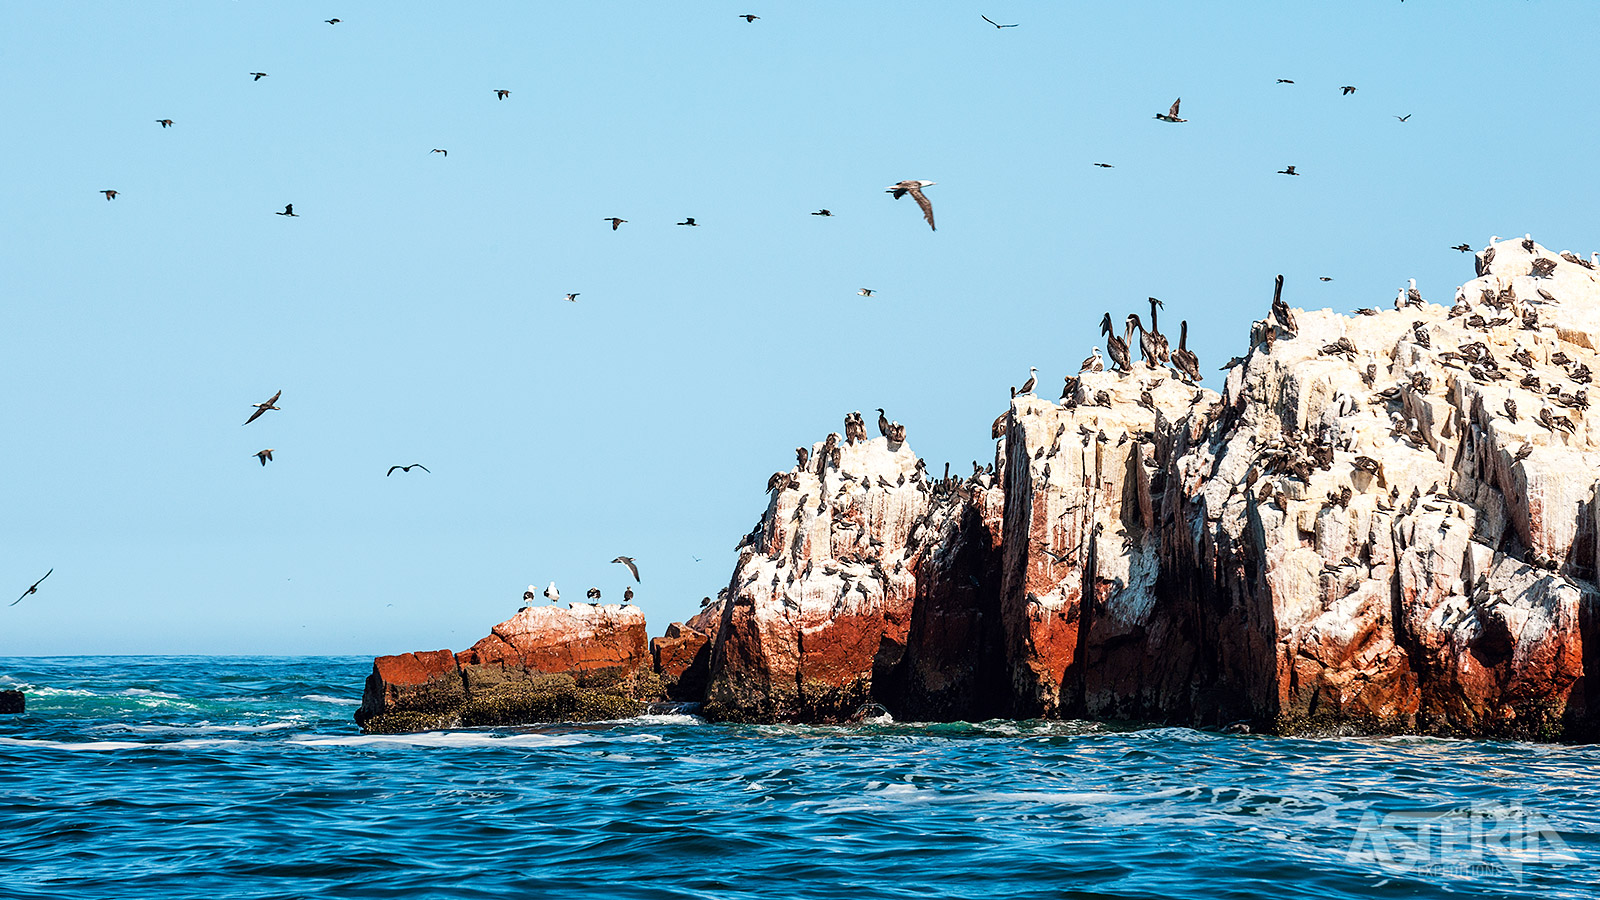 Duizenden zeeleeuwen, pinguïns, dolfijnen en pelikanen bewonen de Ballestas-eilandengroep voor de kust van Peru